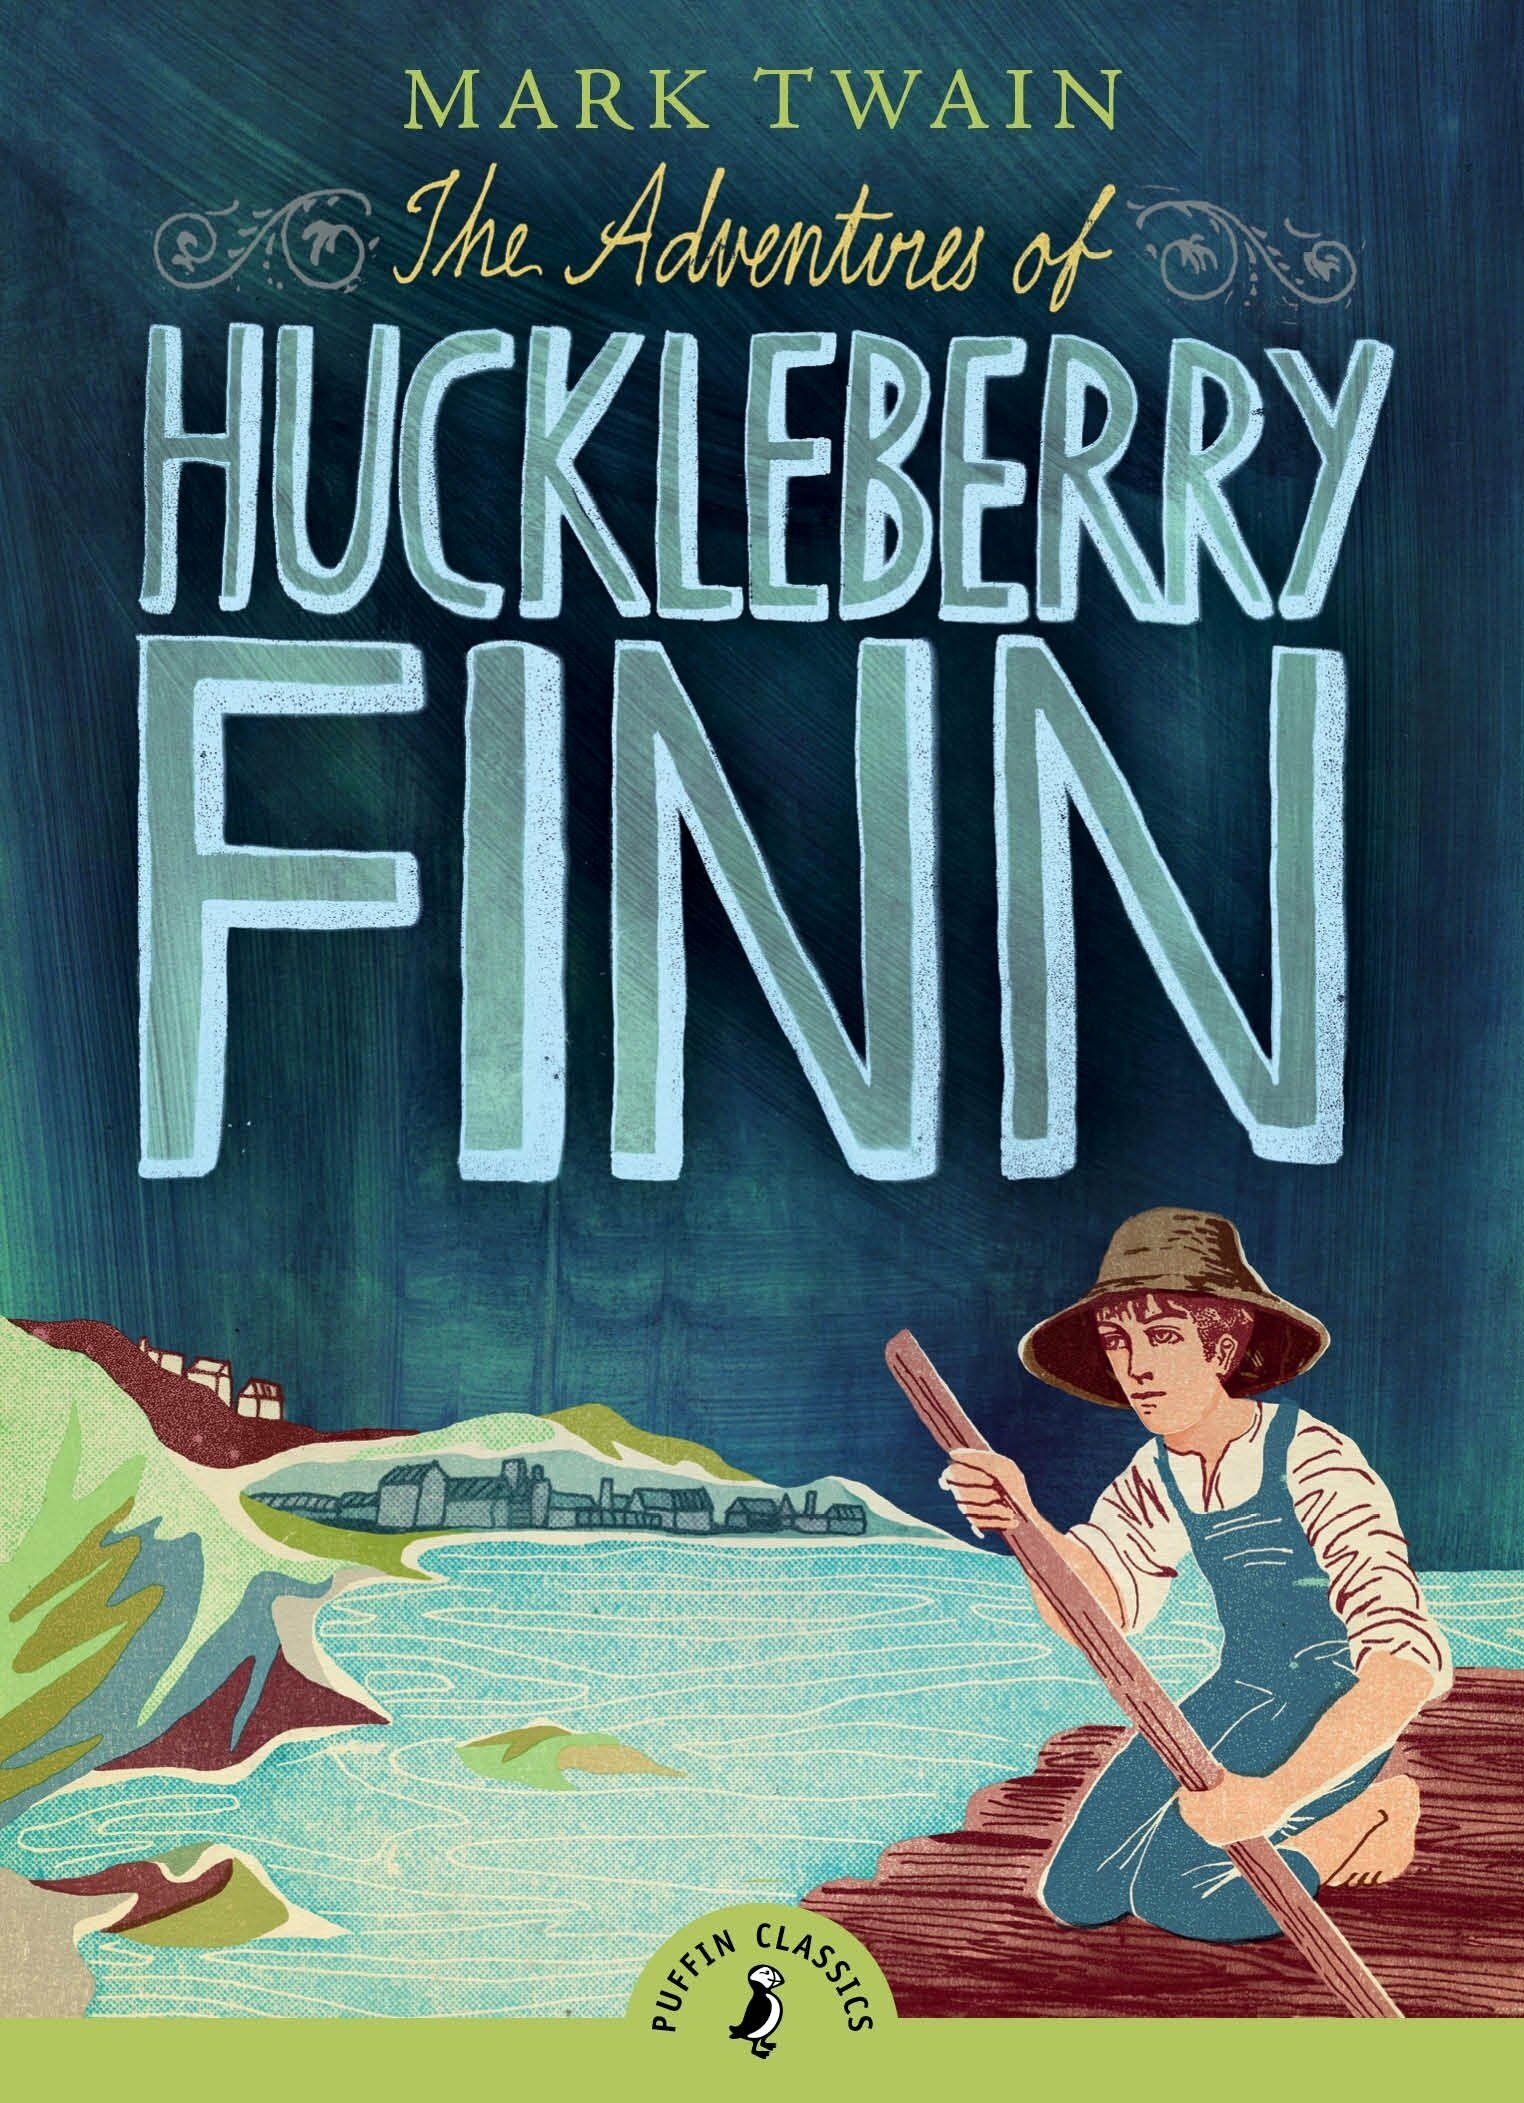 (Adventure of)Huckleberry Finn